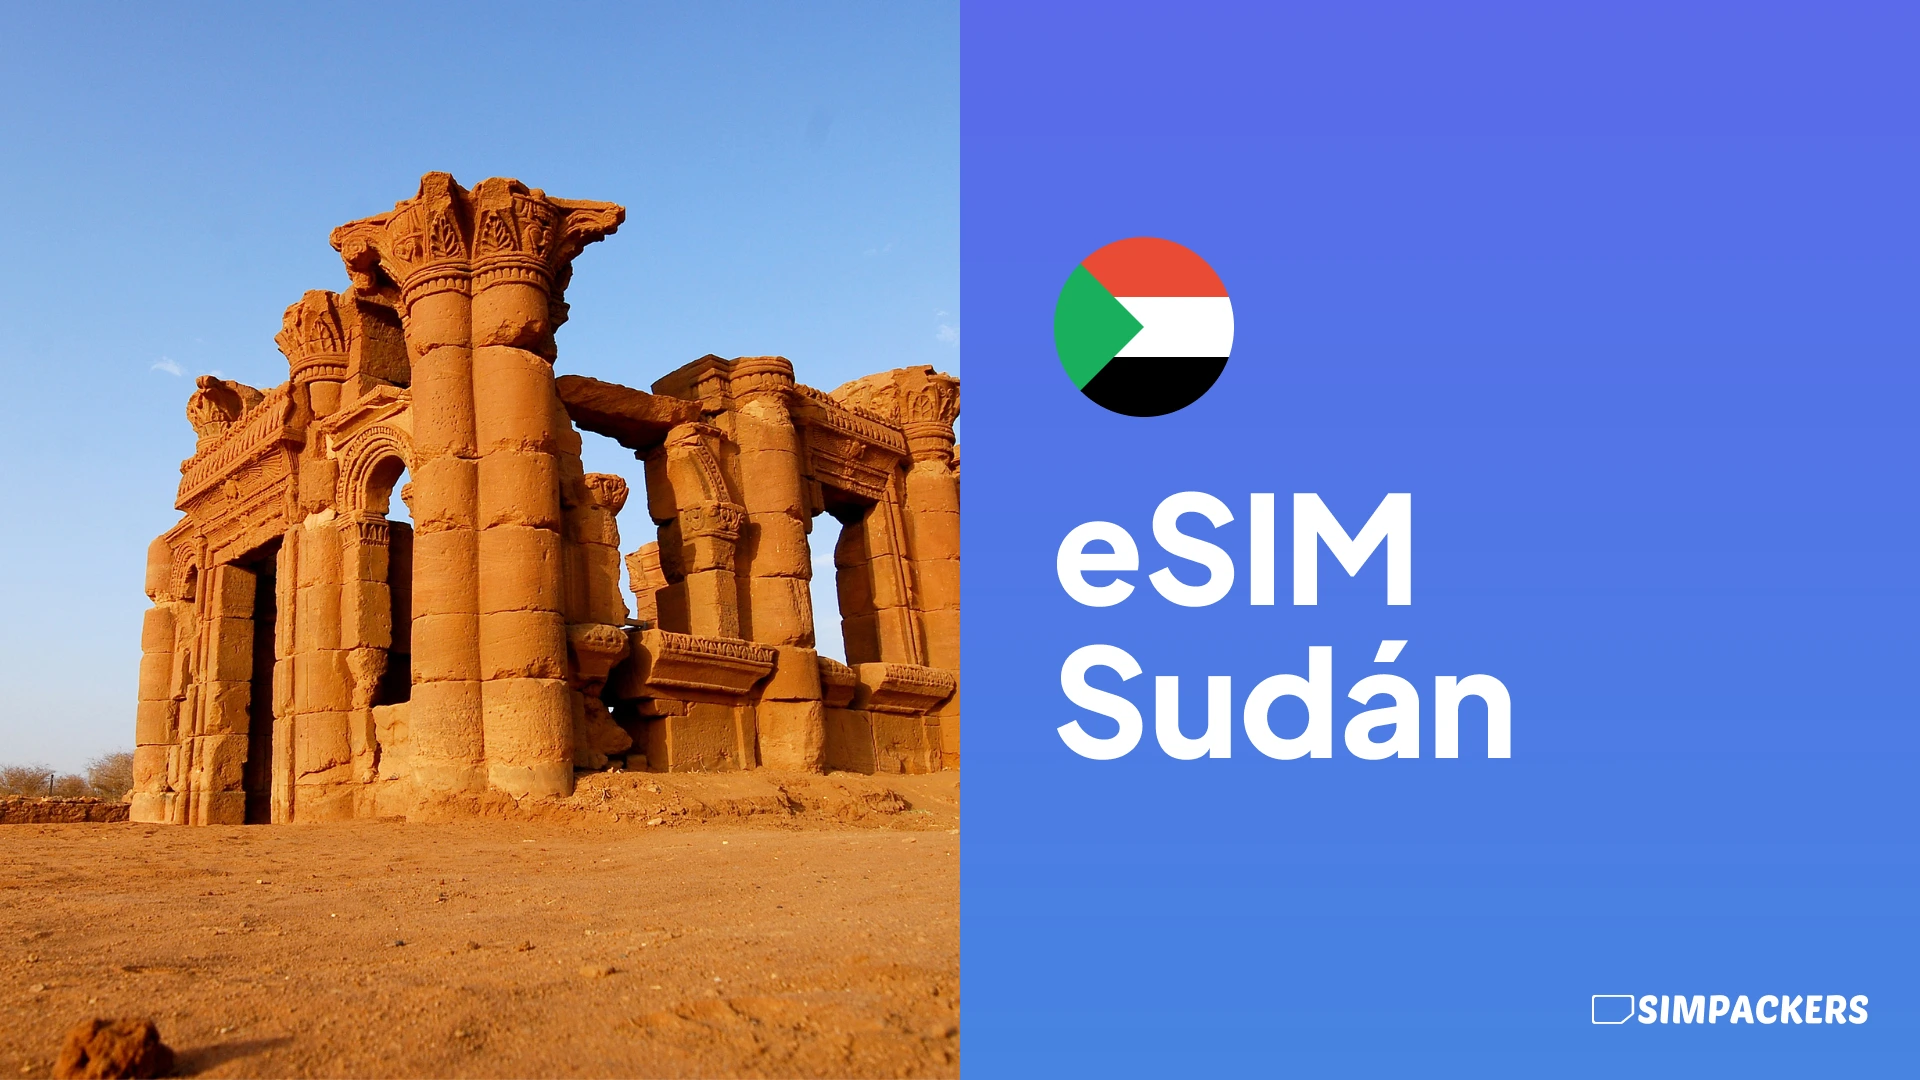 FR/FEATURED_IMAGES/esim-sudan.webp